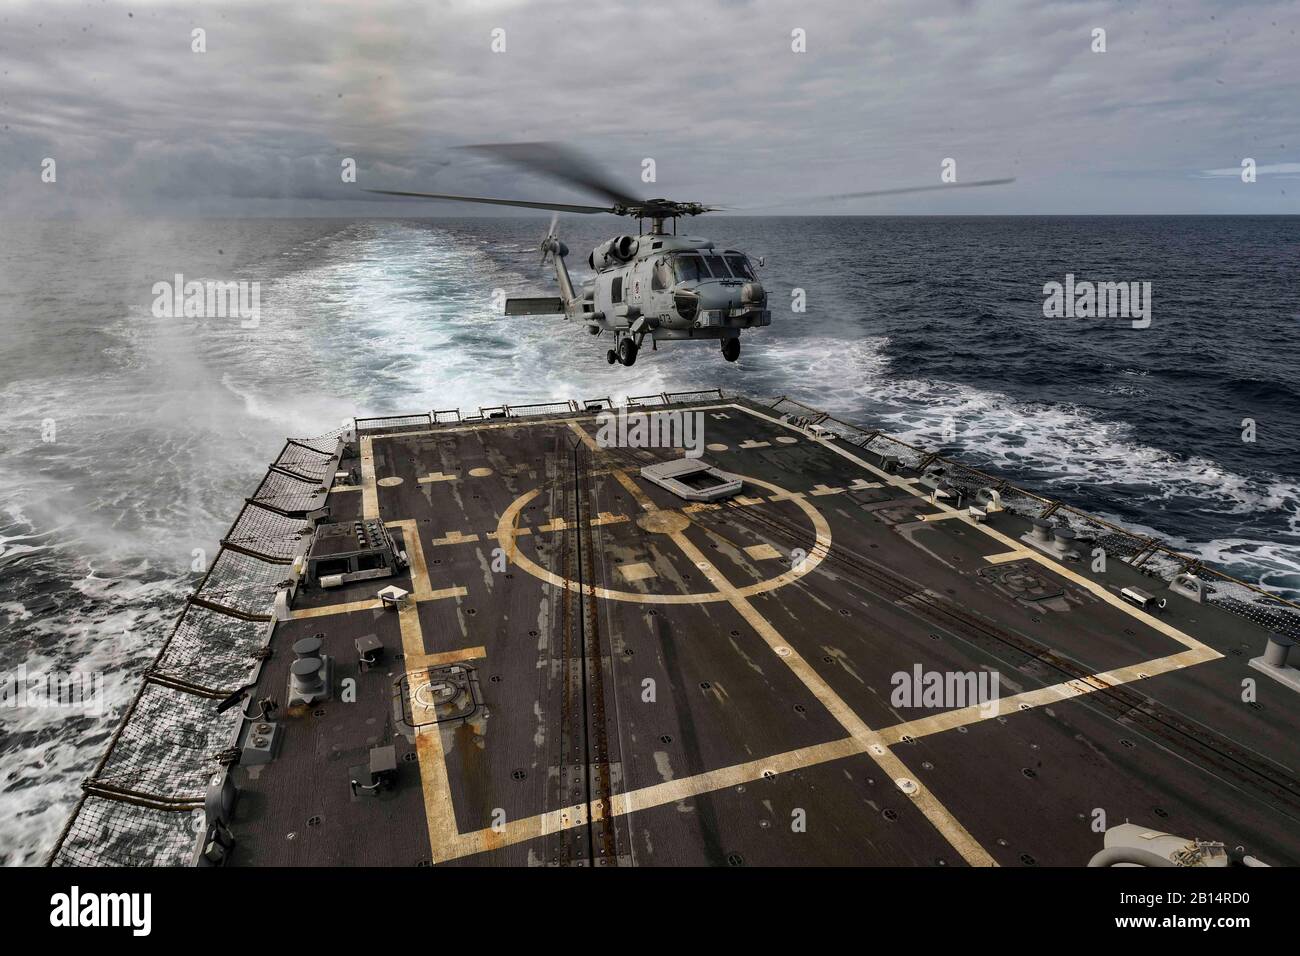 Ein U.S. Navy MH-60R Sea Hawk Hubschrauber, Hubschrauber Maritime Strike Squadron (HSM) 46, Det zugeordnet. 1, landet auf dem Flugdeck der Arleigh-Burke-Klasse geführte Anti-raketen-Zerstörer USS Oscar Austin (DDG79) im Atlantischen Ozean 26.08.2017. Oscar Austin auf einer routinemäßigen Bereitstellung unterstützen die nationale Sicherheit der USA Interessen in Europa und der zunehmenden Theater Sicherheit gute Zusammenarbeit und freuen uns naval Präsenz in den USA 6 Flotte Bereich der Operationen. (U.S. Marine Foto von Mass Communication Specialist 2. Klasse Ryan U. Kledzik) Stockfoto